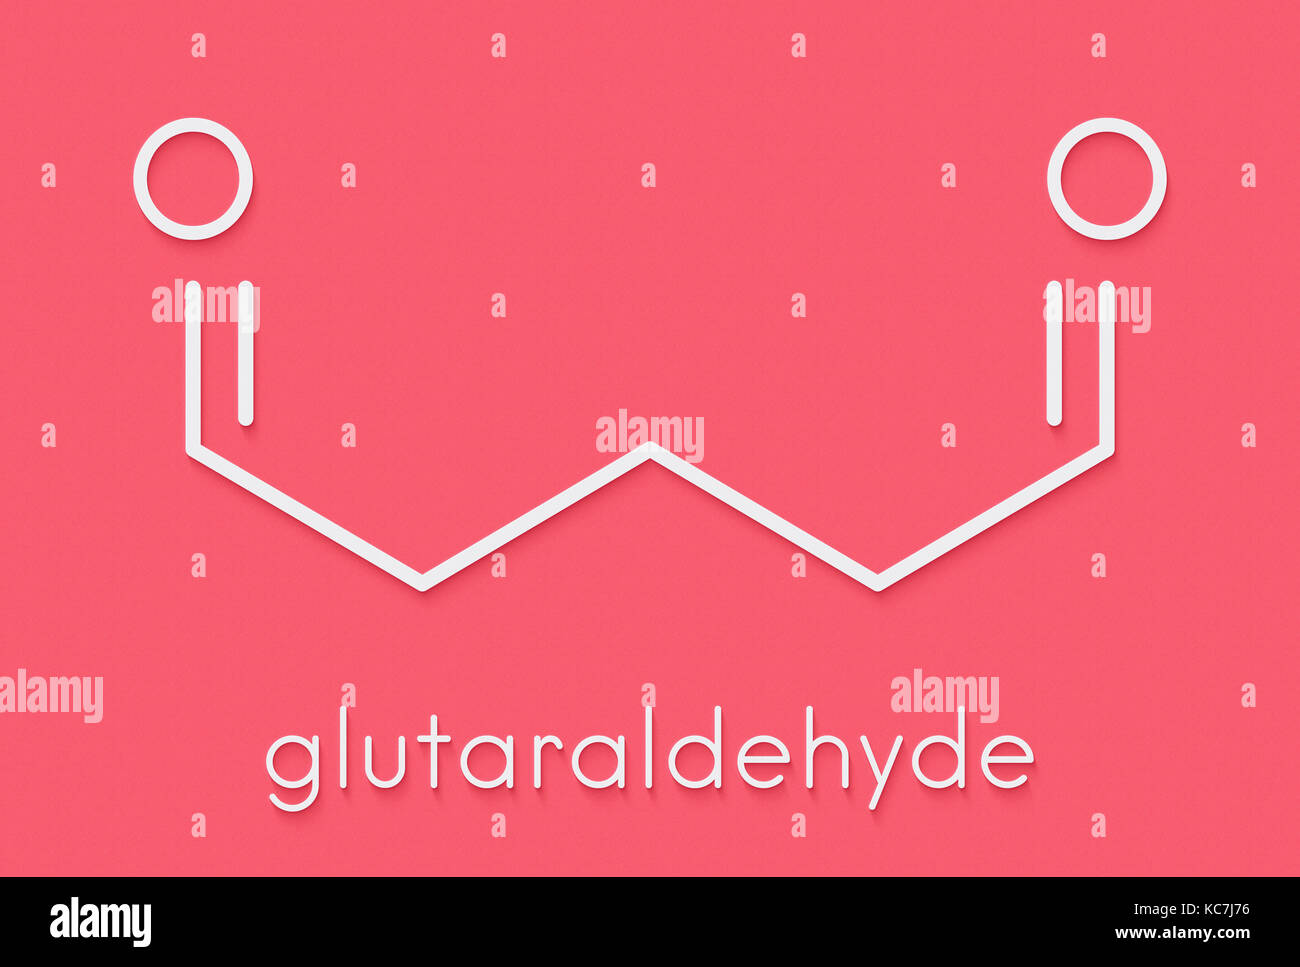 Le glutaraldéhyde glutaraldéhyde (désinfectant) molécule. utilisé dans la désinfection des dispositifs médicaux et instruments chirurgicaux. formule topologique. Banque D'Images